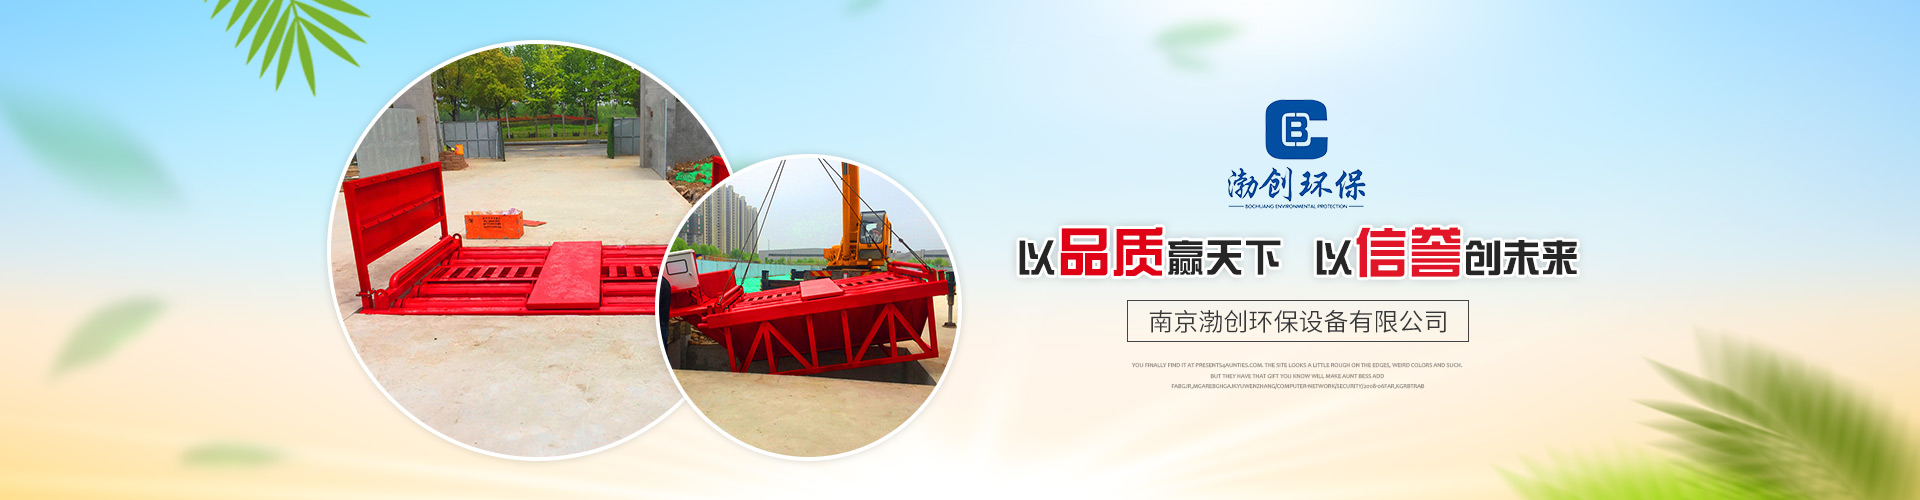 上海滚轴式排泥洗车机生产商 专注清洁设备